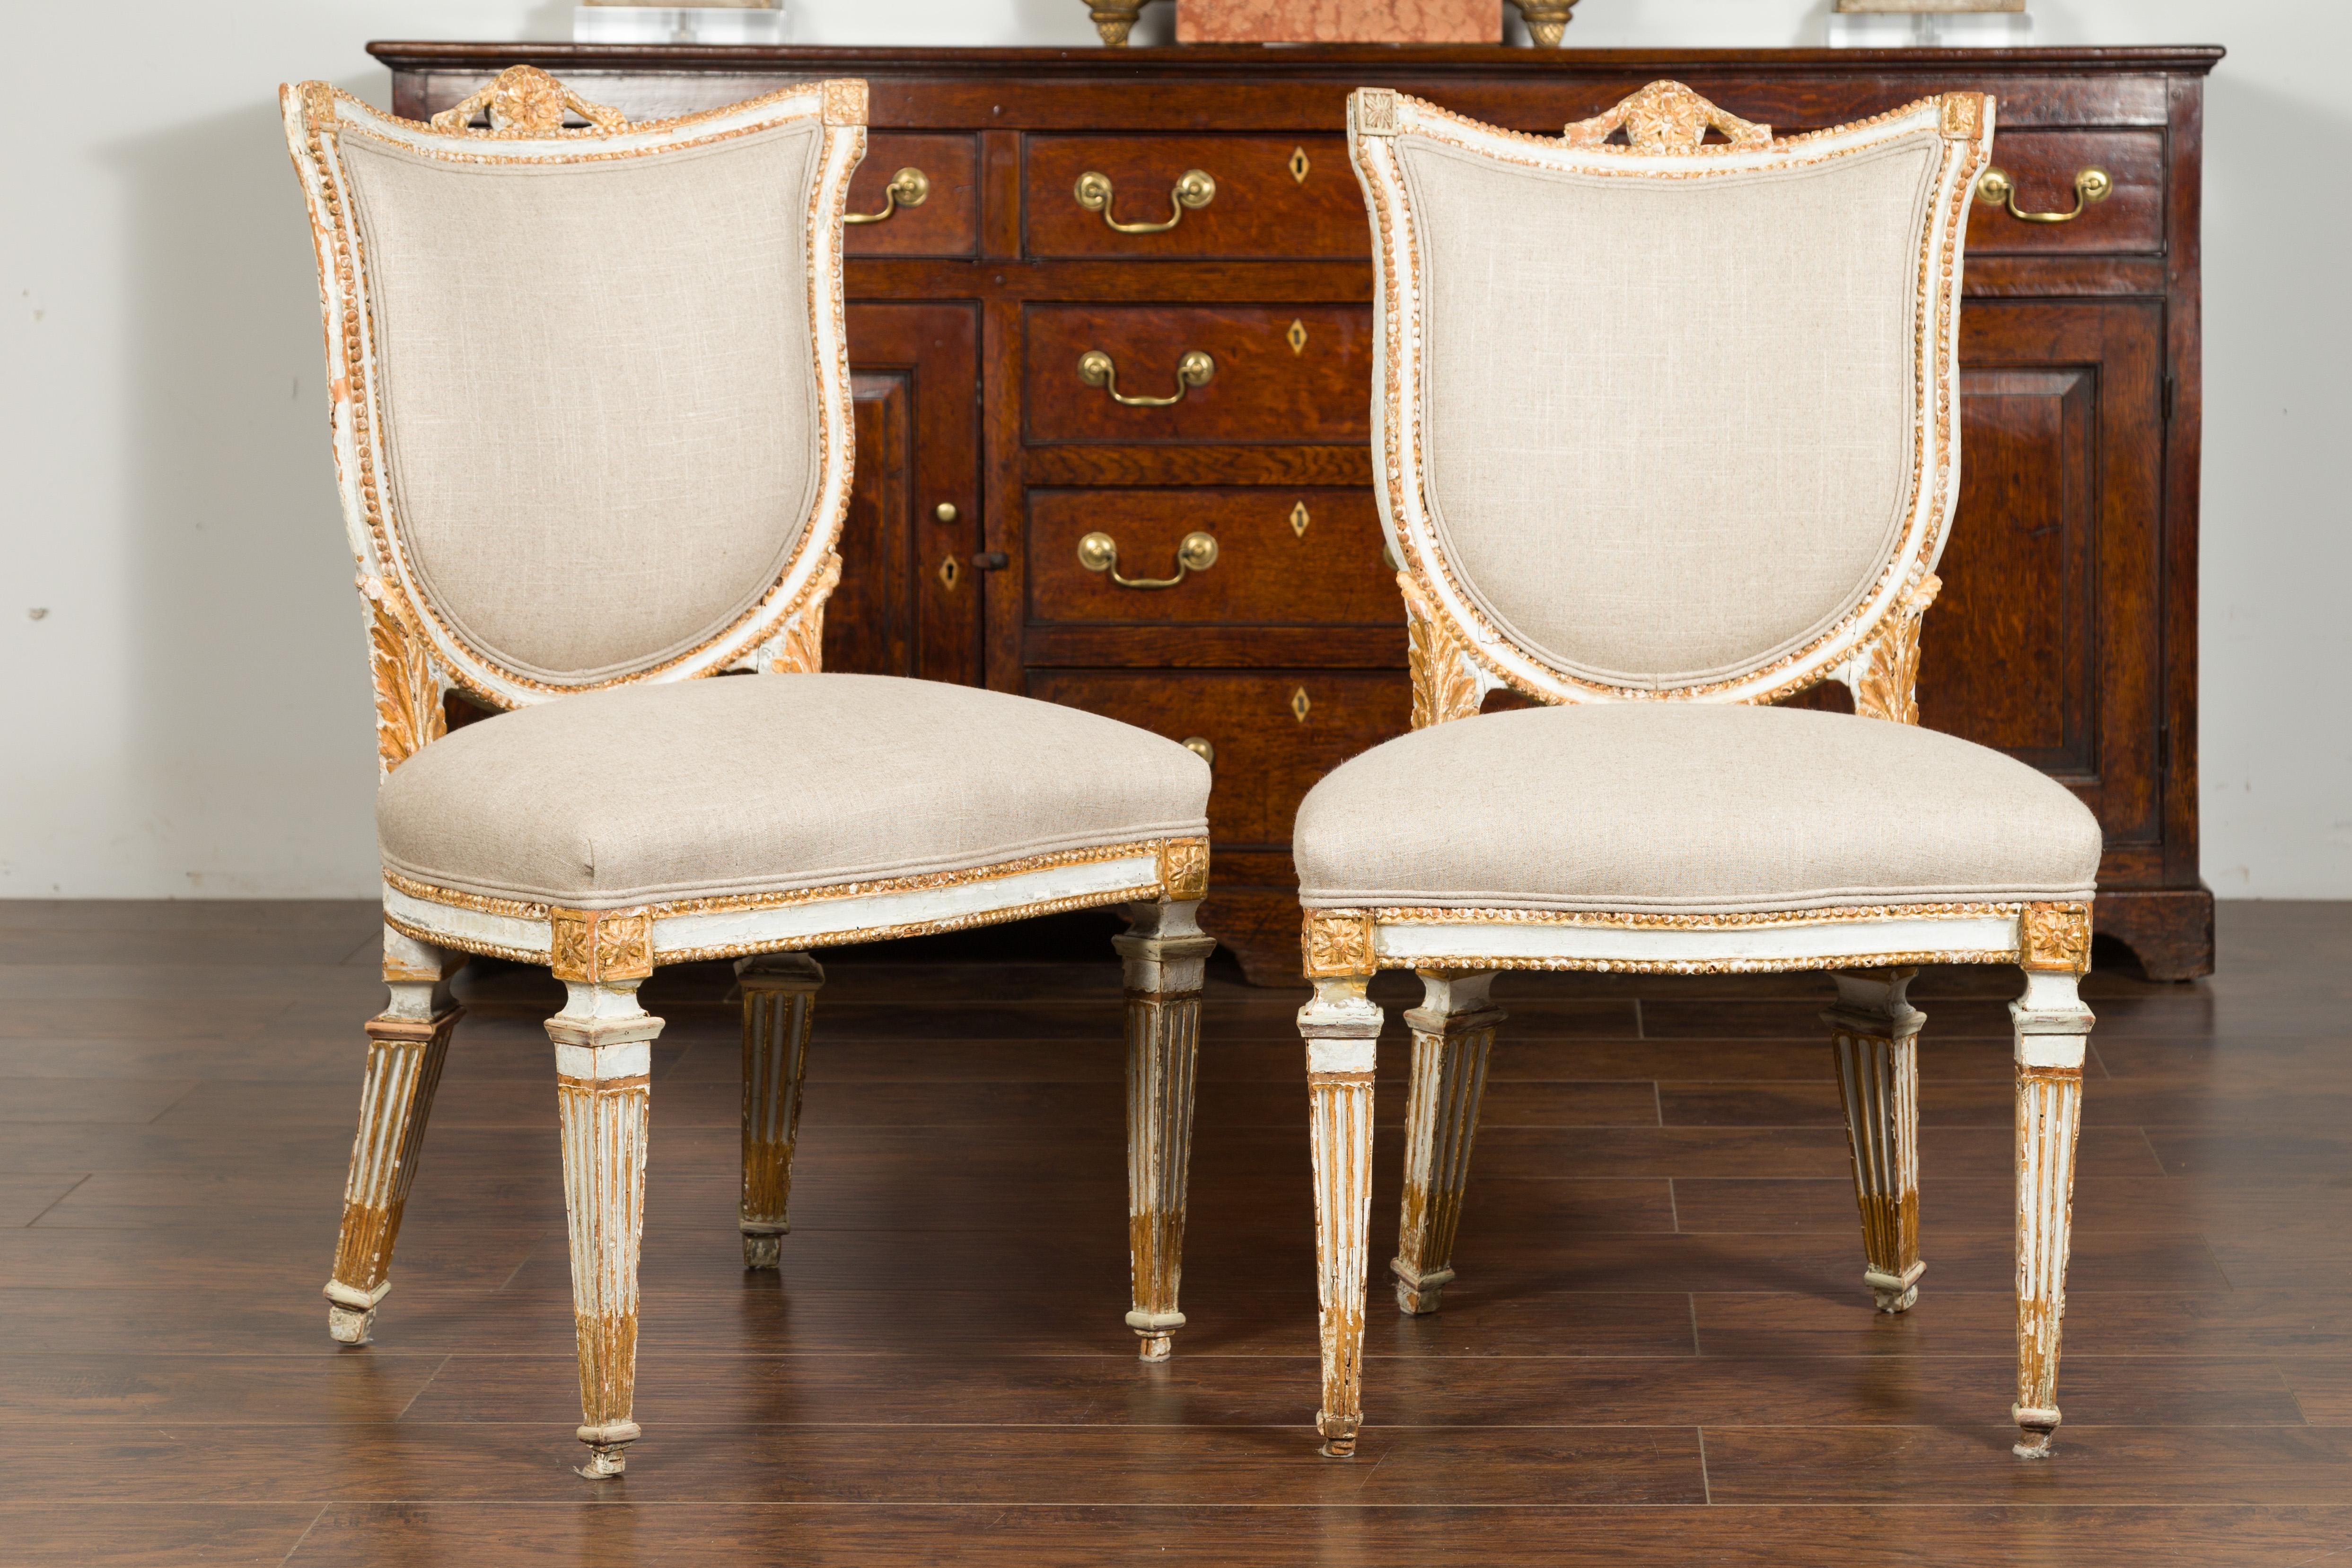 Ein Paar italienische, bemalte und geschnitzte Beistellstühle aus den 1790er Jahren mit Schildrücken und Spuren von Vergoldung. Dieses Paar italienischer neoklassizistischer Beistellstühle aus dem späten 18. Jahrhundert ist ein echter Hingucker!